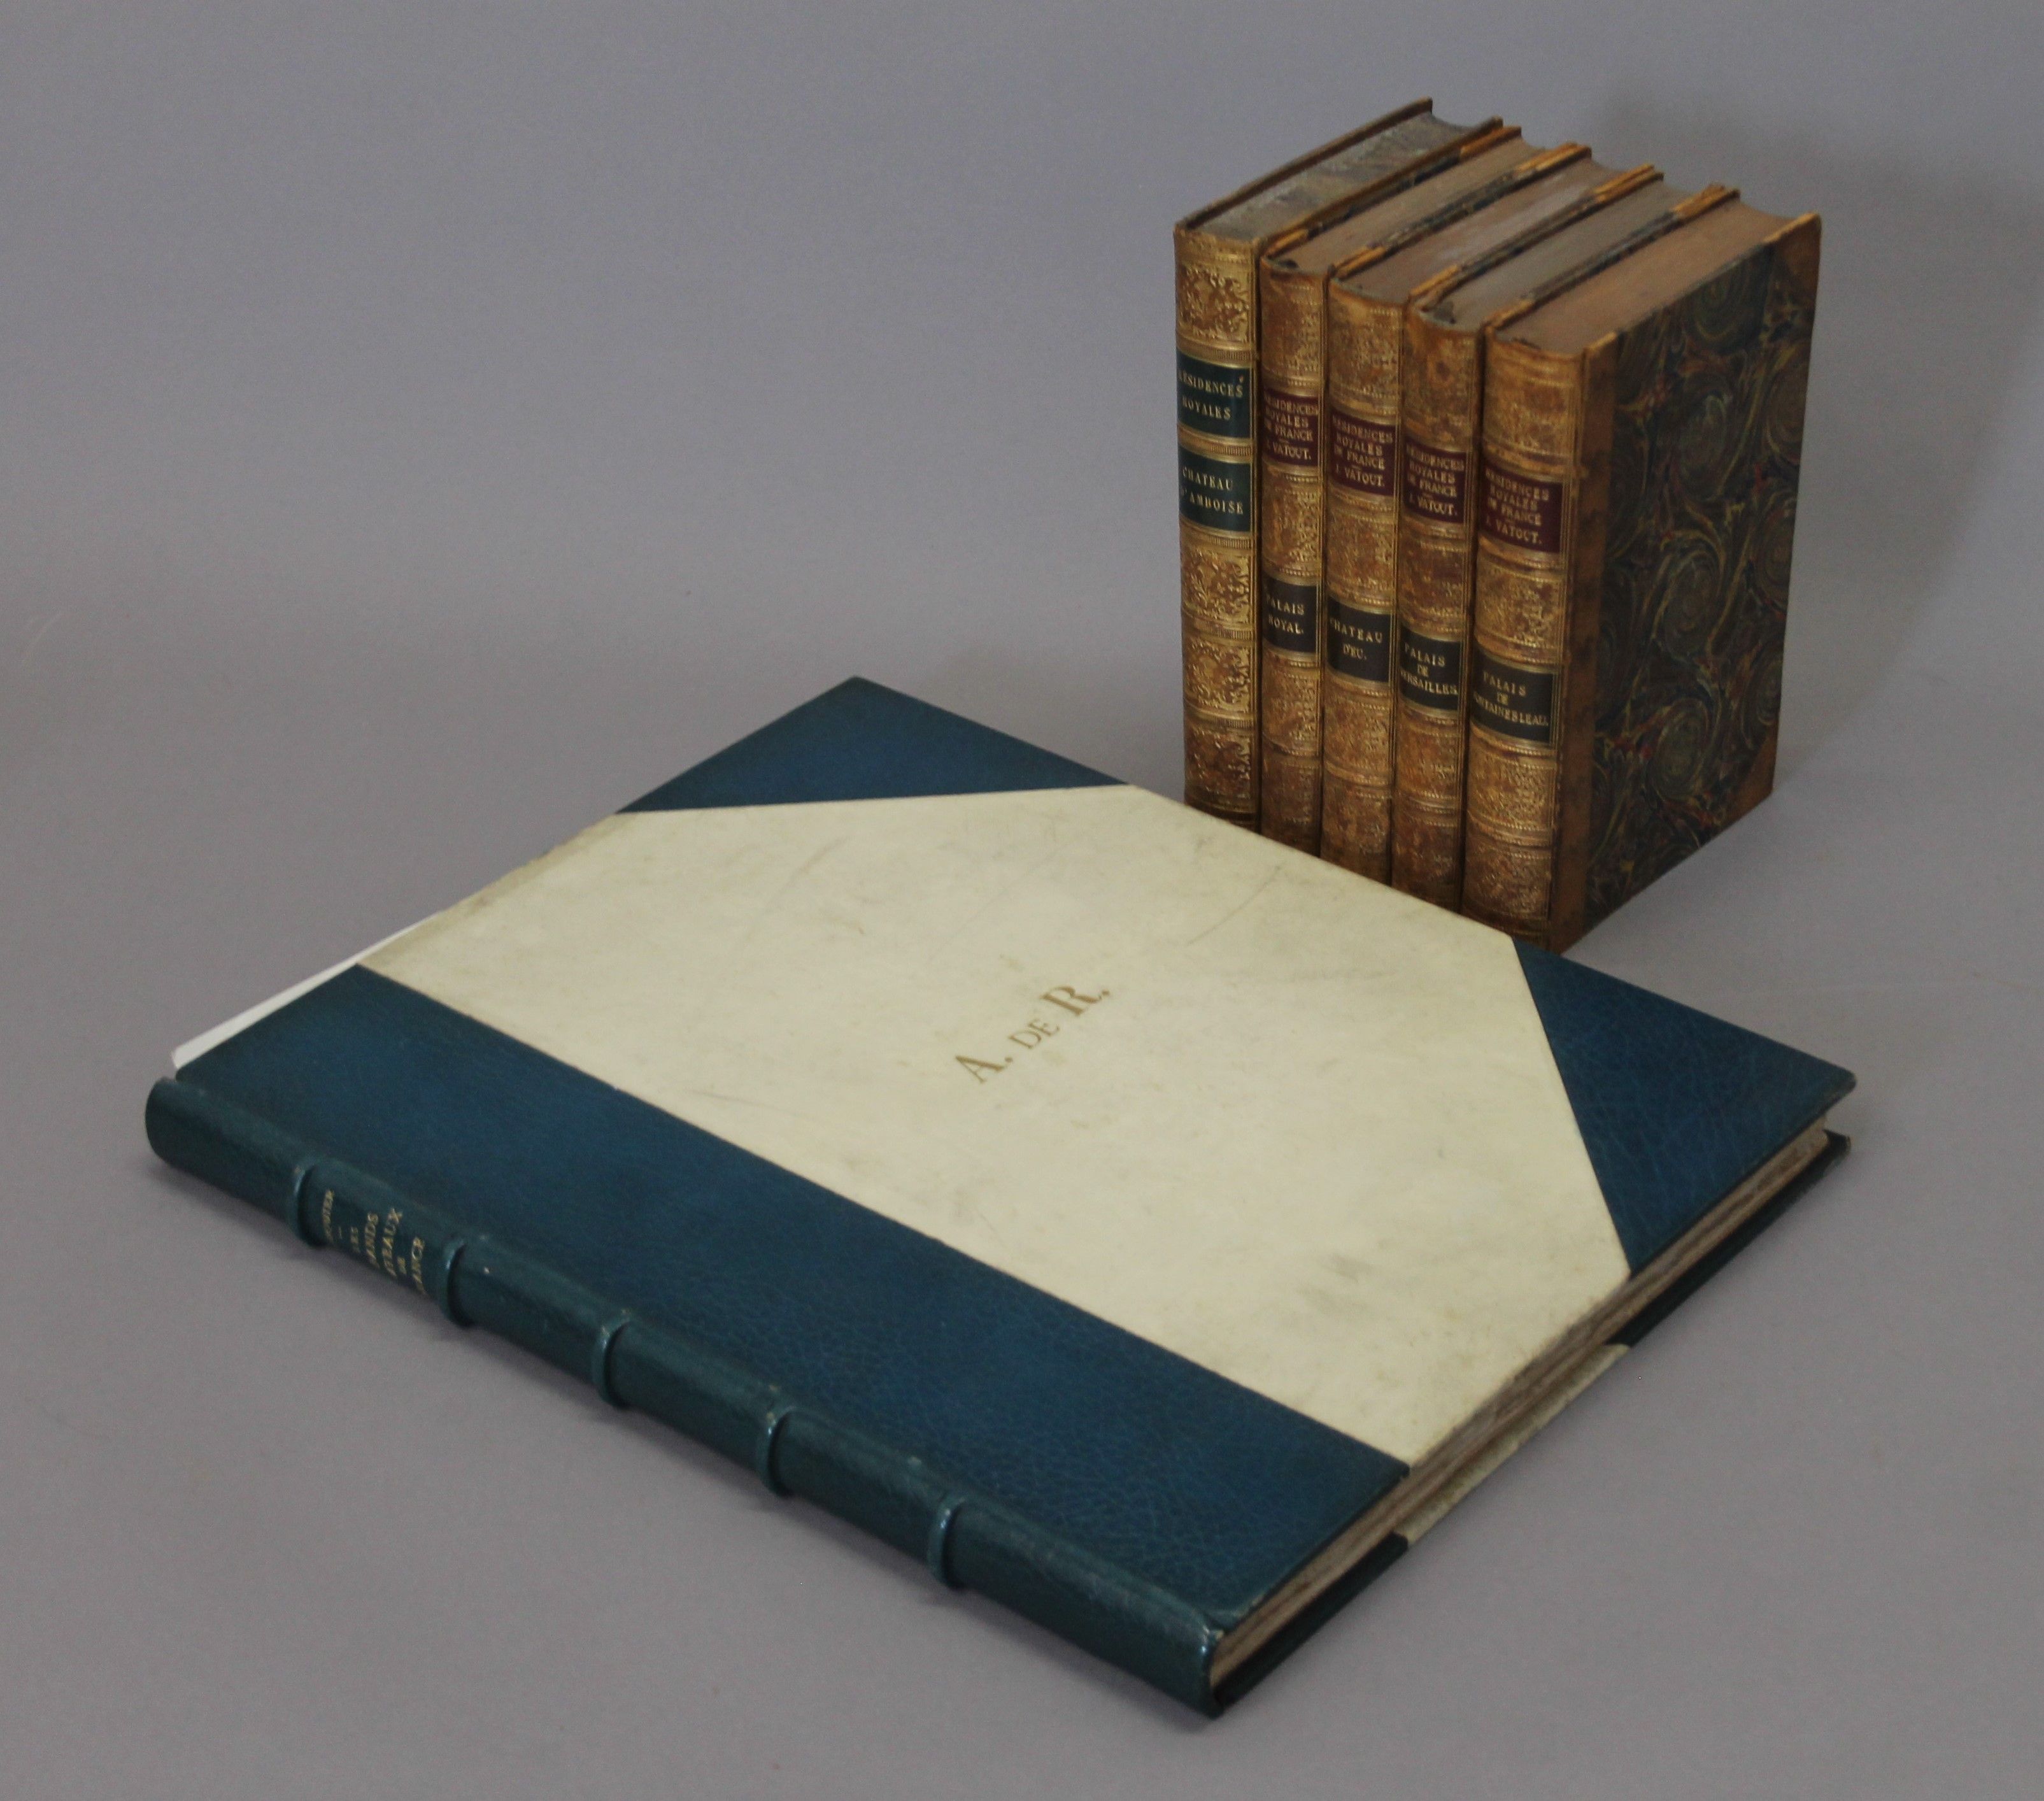 Fourquier (M Marcel), Les Grands Chateaux de France, folio, limited to 600 copies,